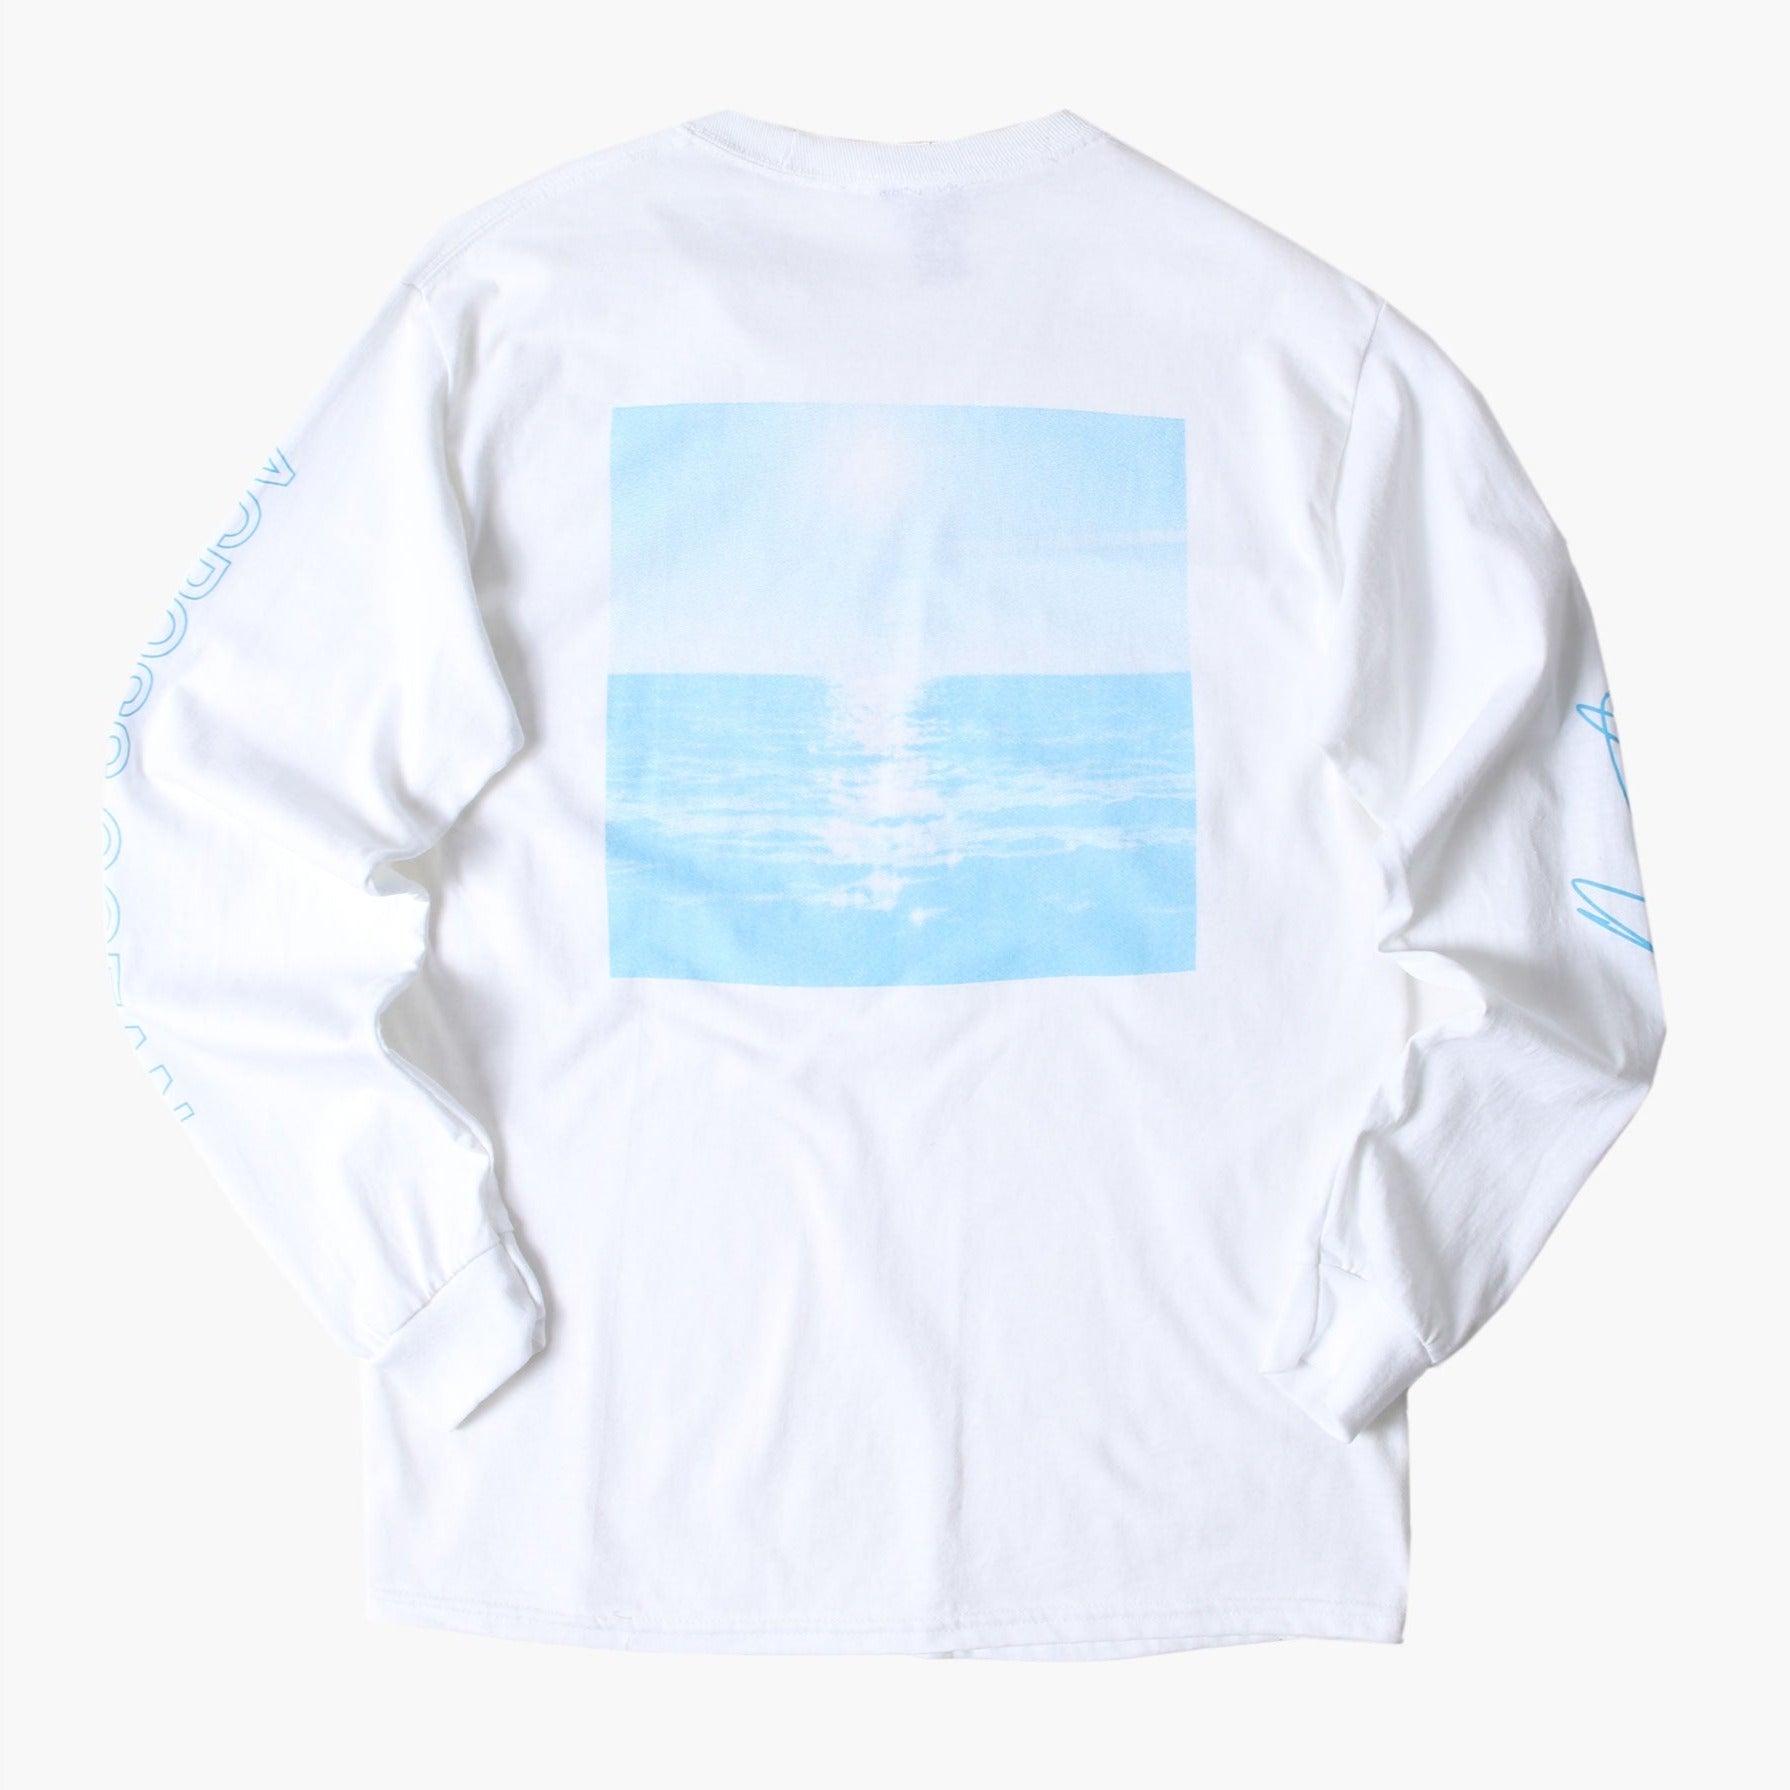 CHRIS STUSSY "ACROSS OCEAN" LONGSLEEVE SHIRT WHITE